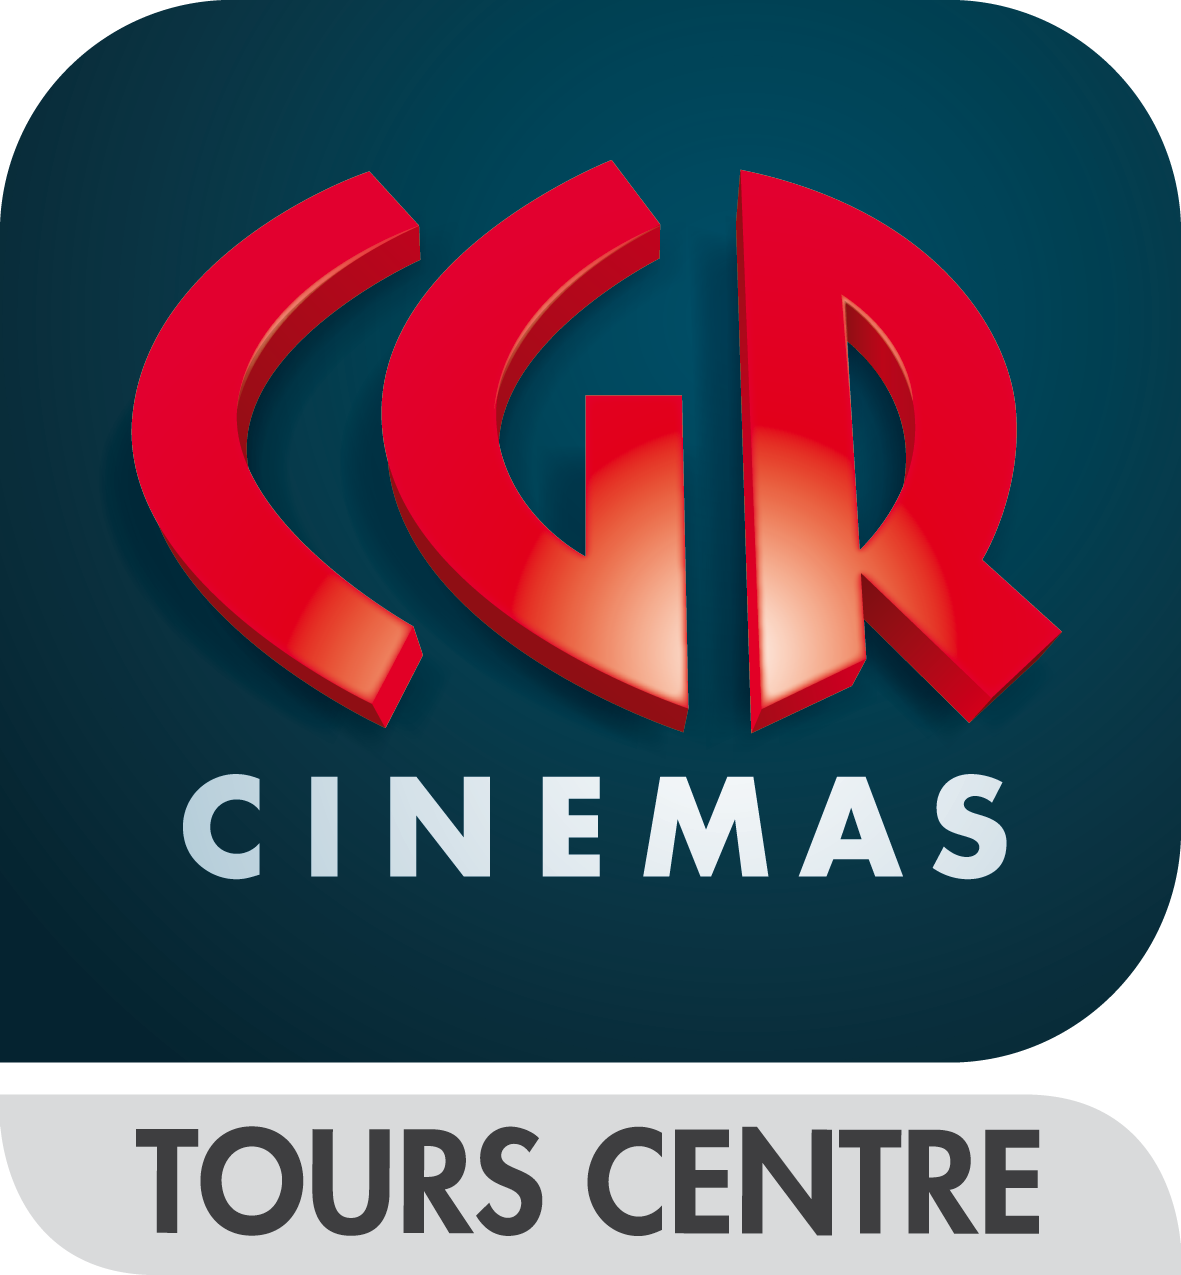 cgr tours centre films